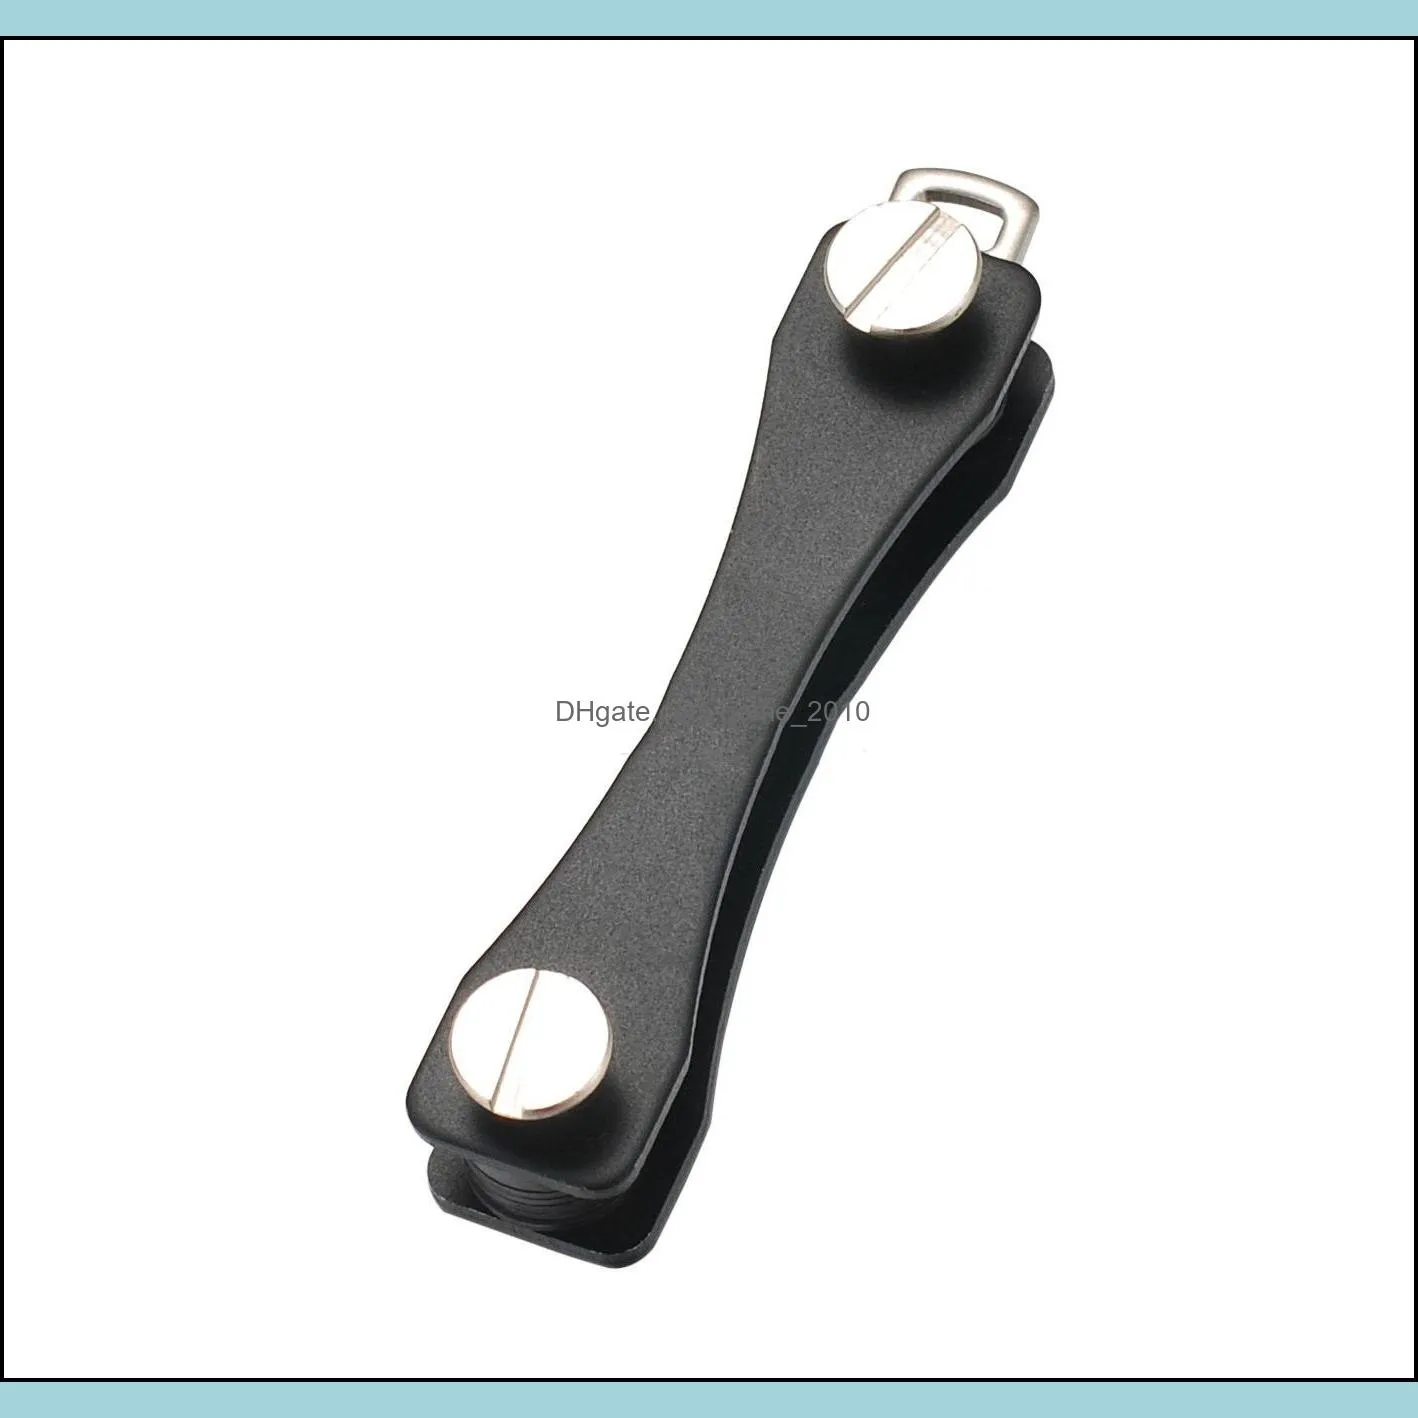 edc key organizer clip keys portable holder folder keys housekeeper keychain flexible key holder clip vtky2288